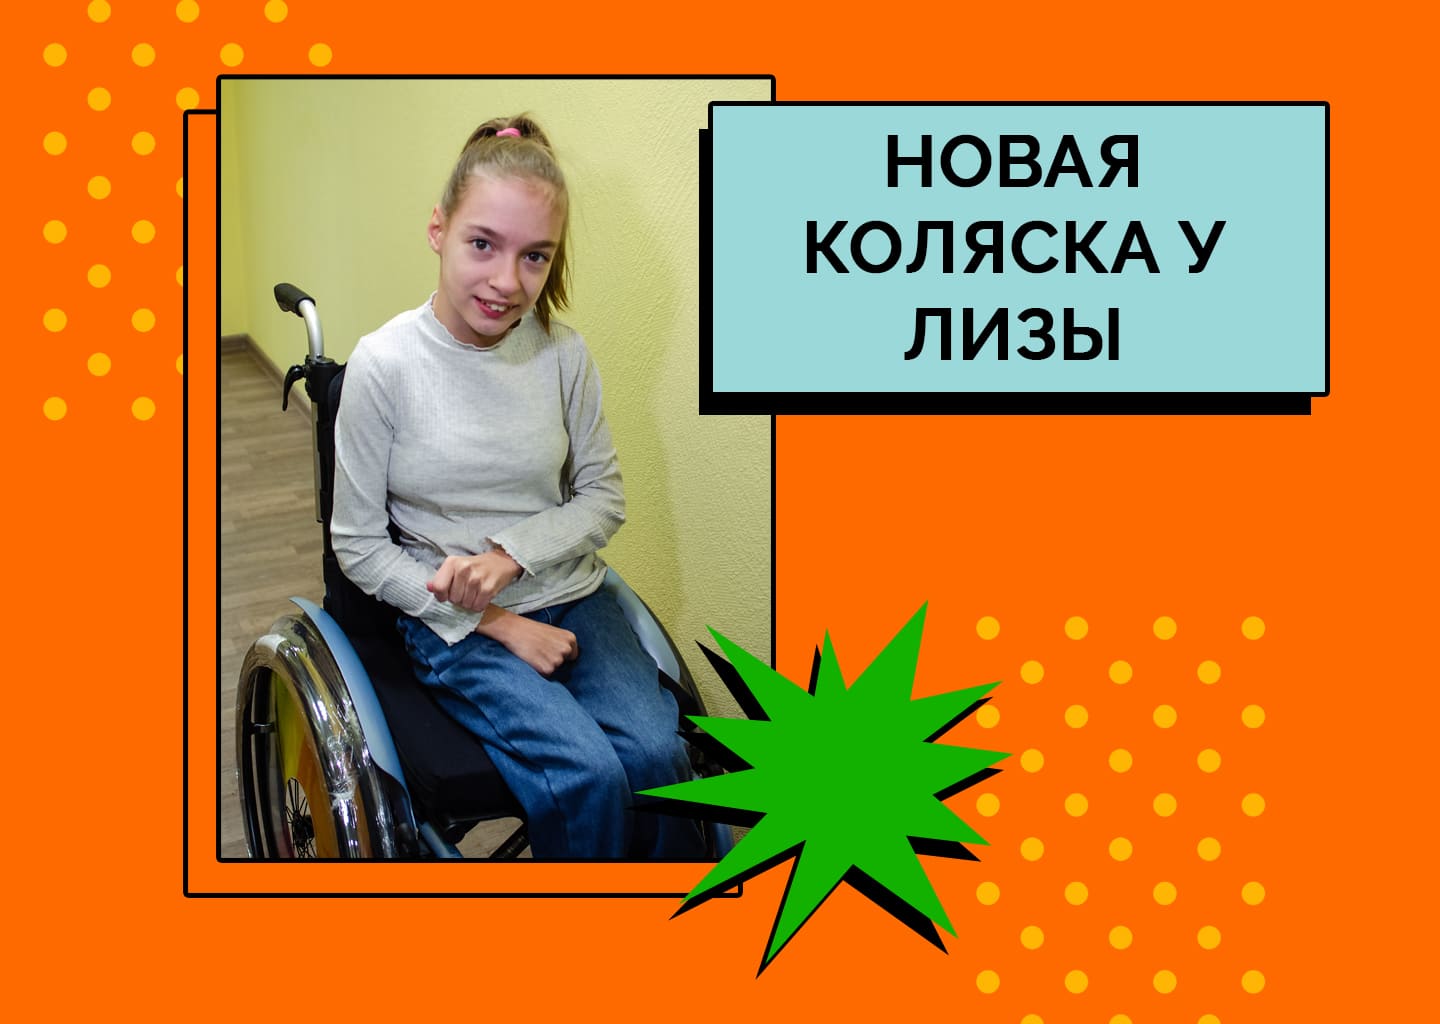 Курносова Лиза ездит в новой коляске